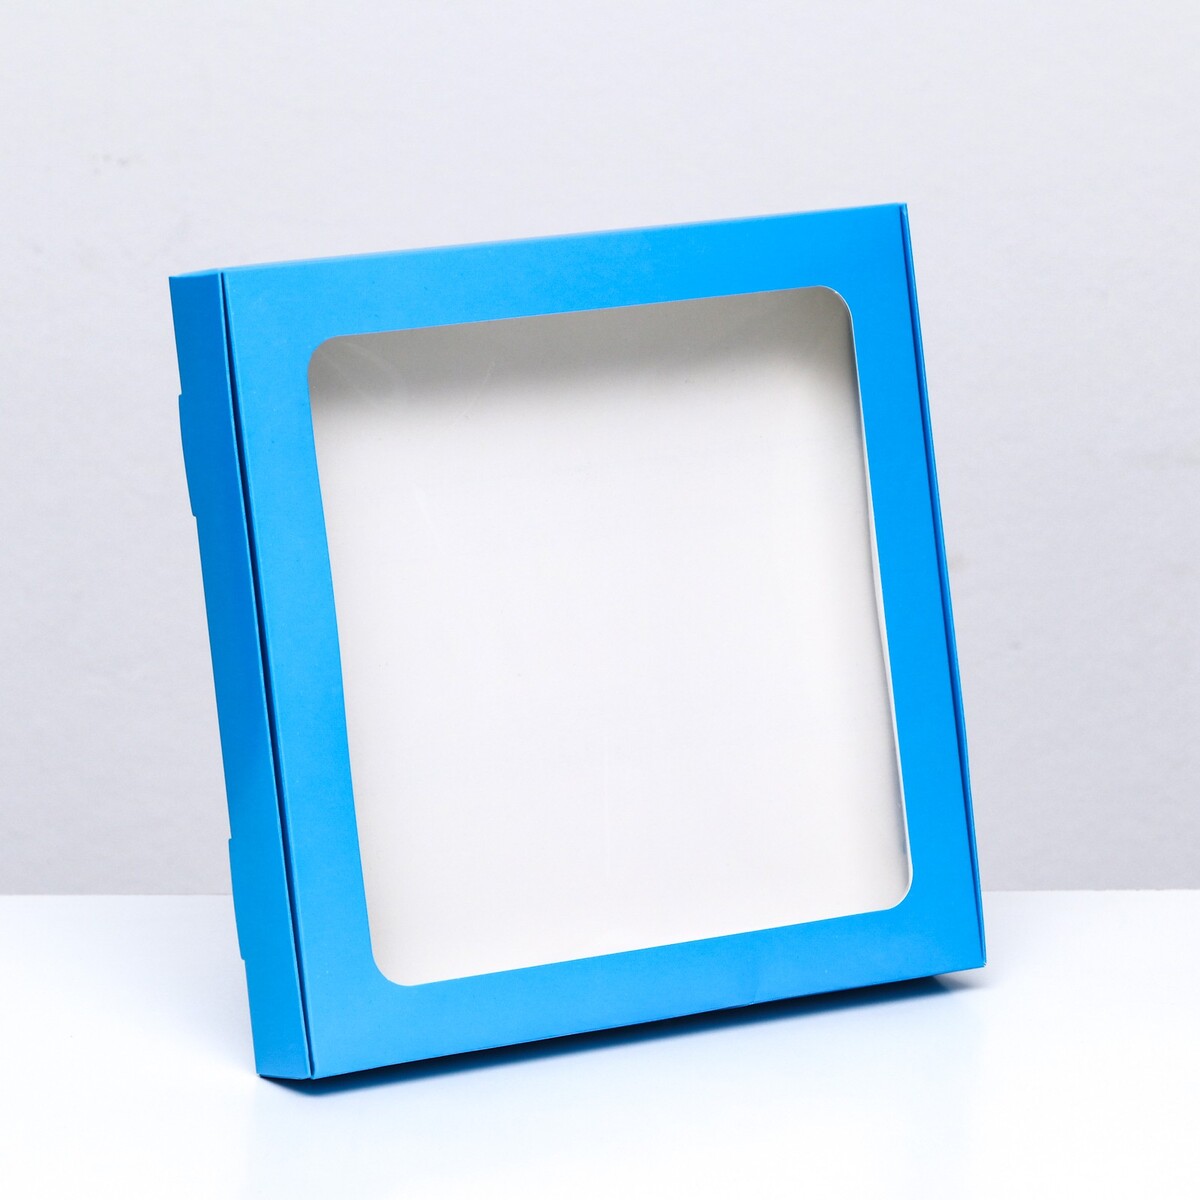 Коробка самосборная с окном синяя, 21 х 21 х 3 см кубики методики зайцева собранные синяя коробка картон